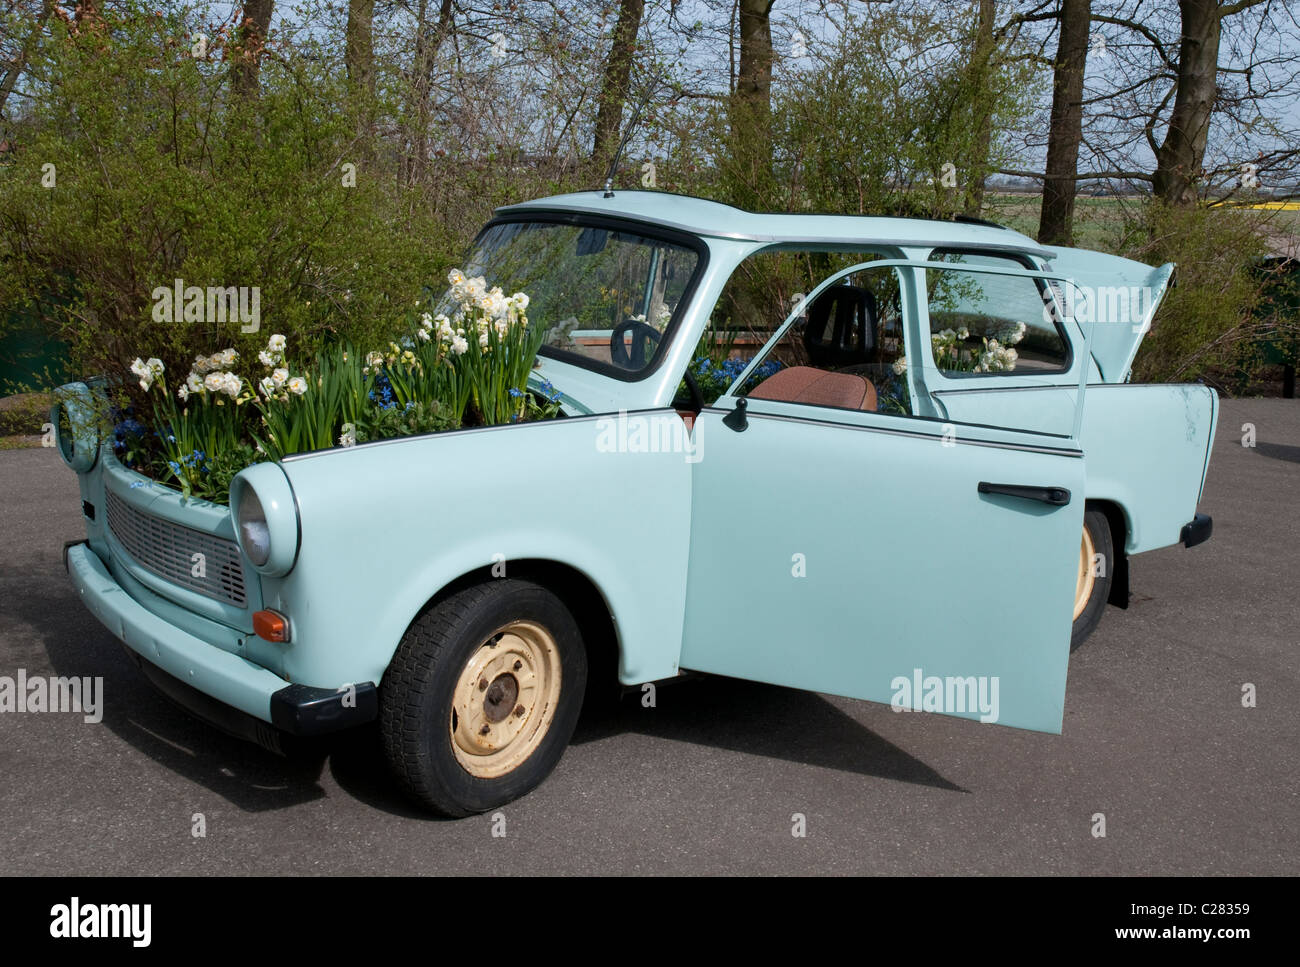 Oldtimer avec fleurs, ausgedientes Blumenschmuck Auto mit, Keukenhof, Hollande, Pays-Bas Banque D'Images